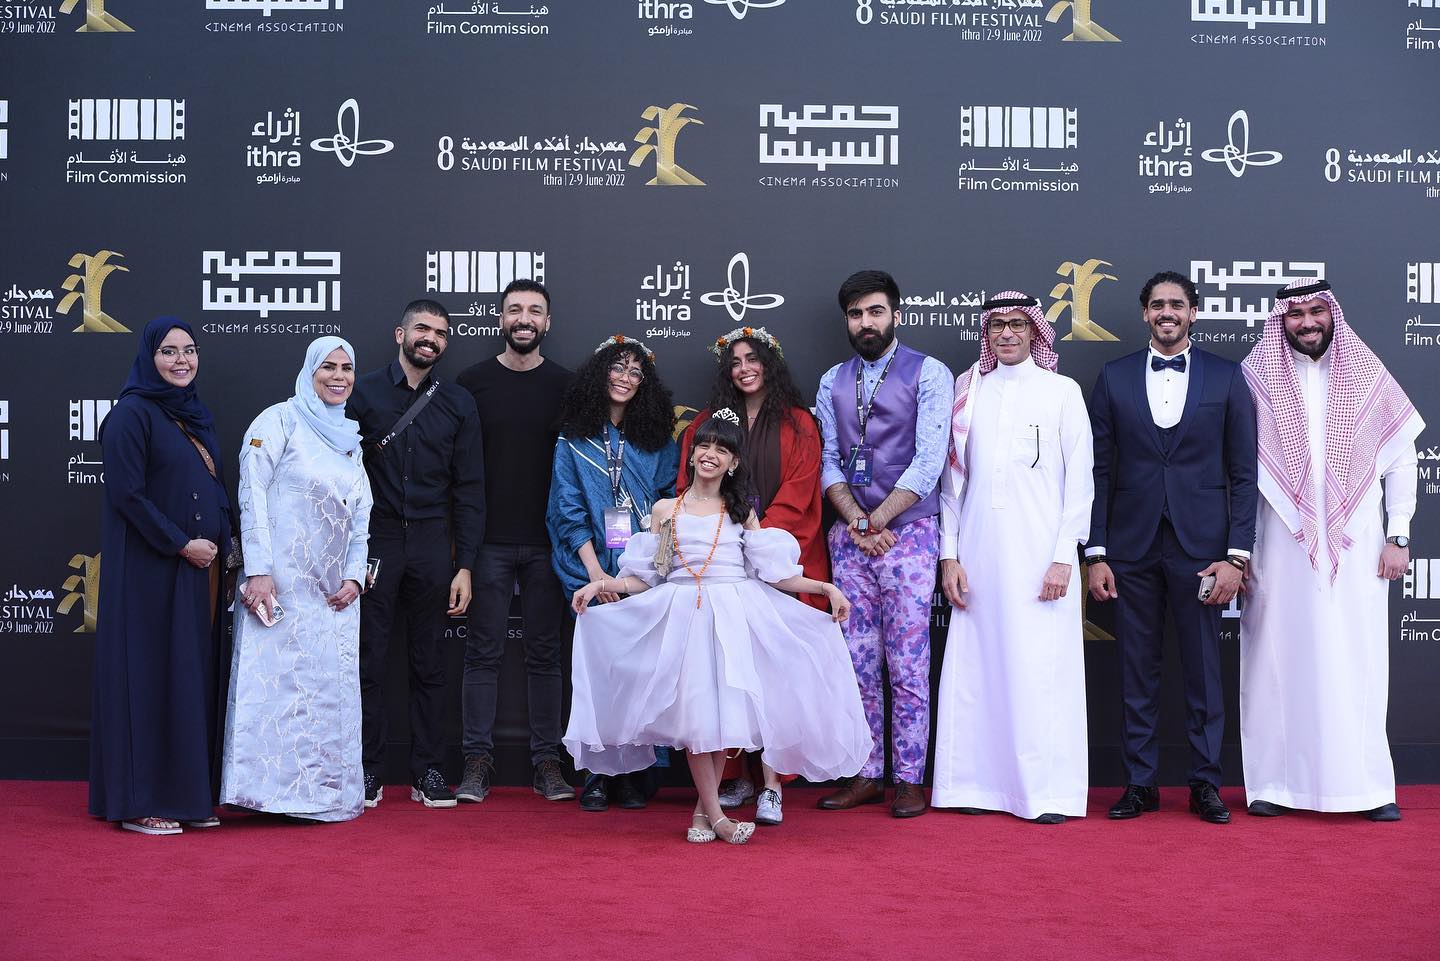 أويما 20 - Uima20 | مناقشة "حقوق المؤلف" ضمن فعاليات مهرجان أفلام السعودية الثامن